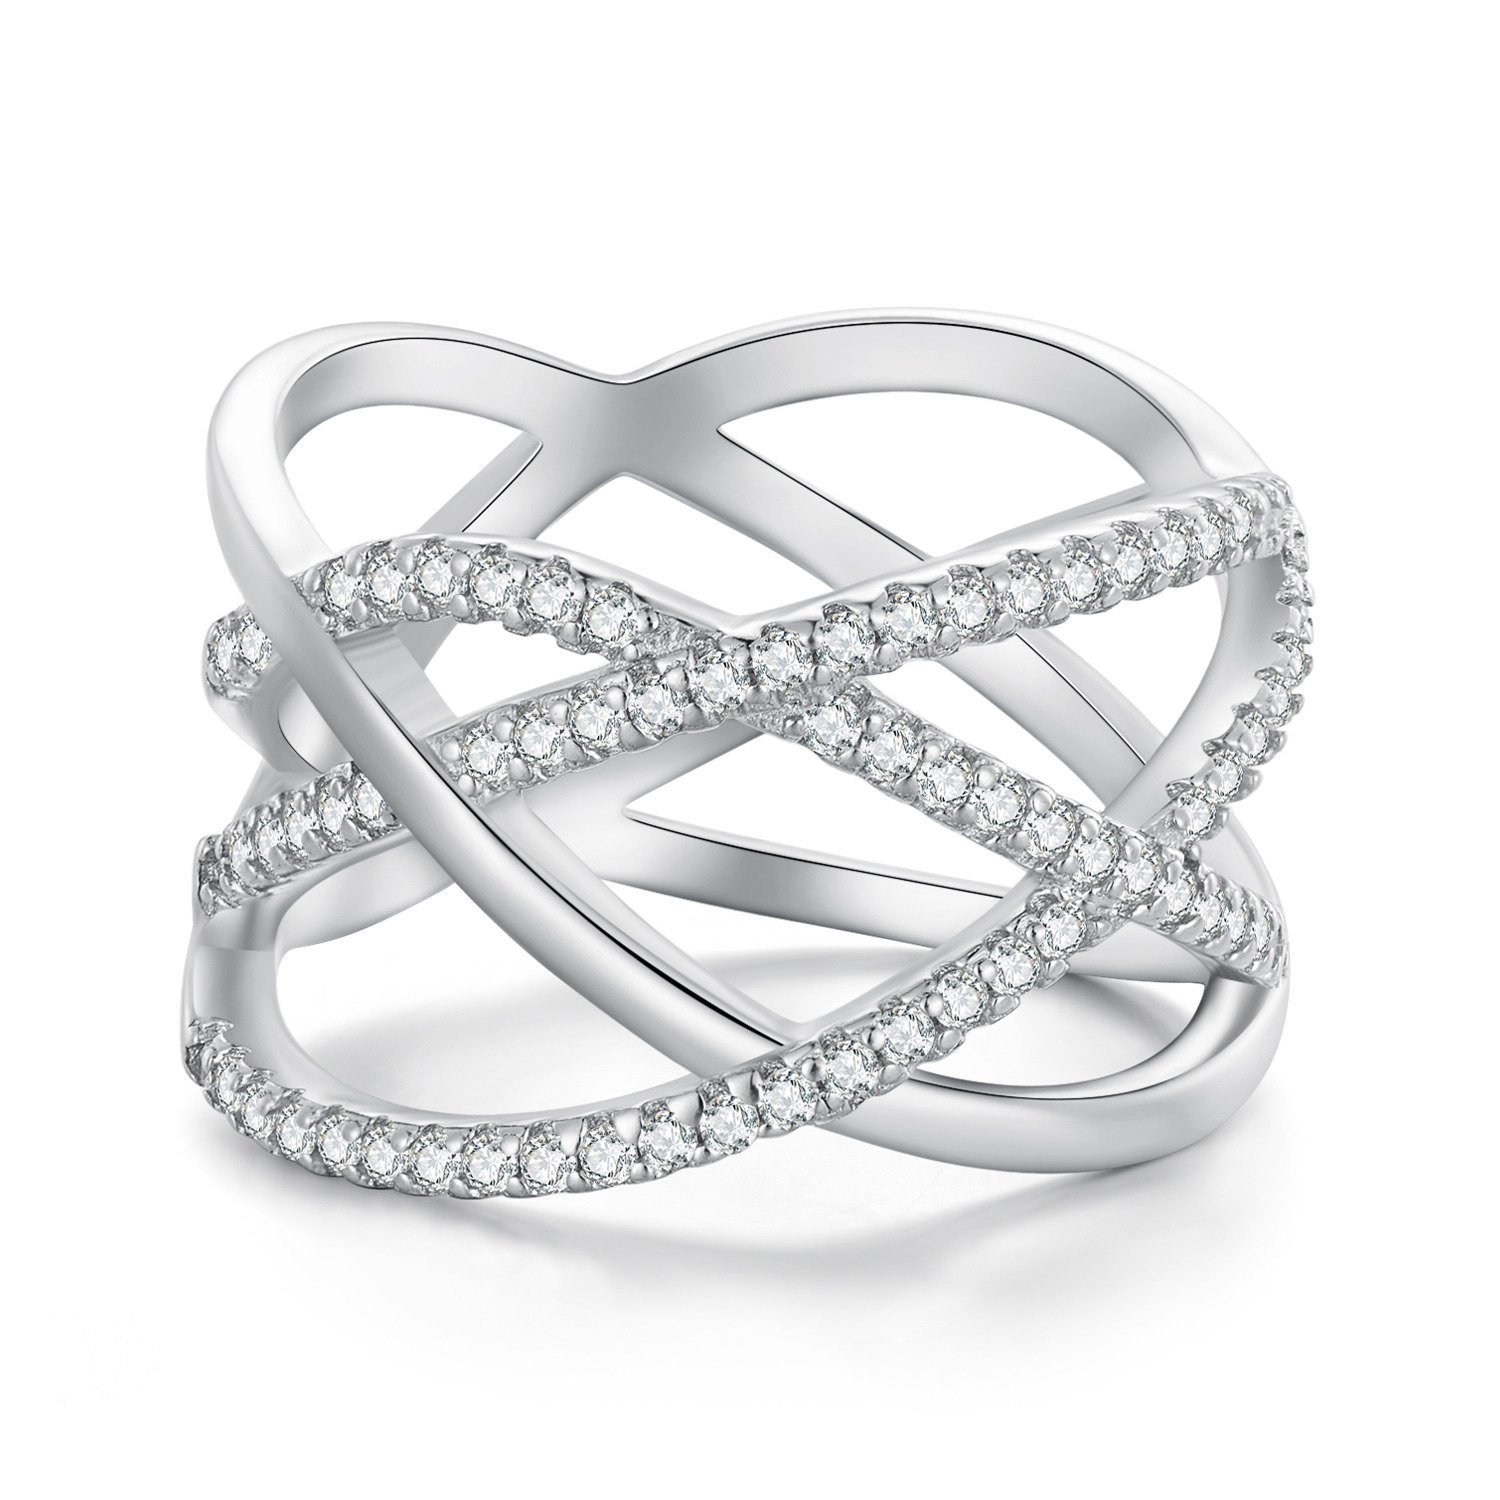 Inel din argint Sparkling Ring image0